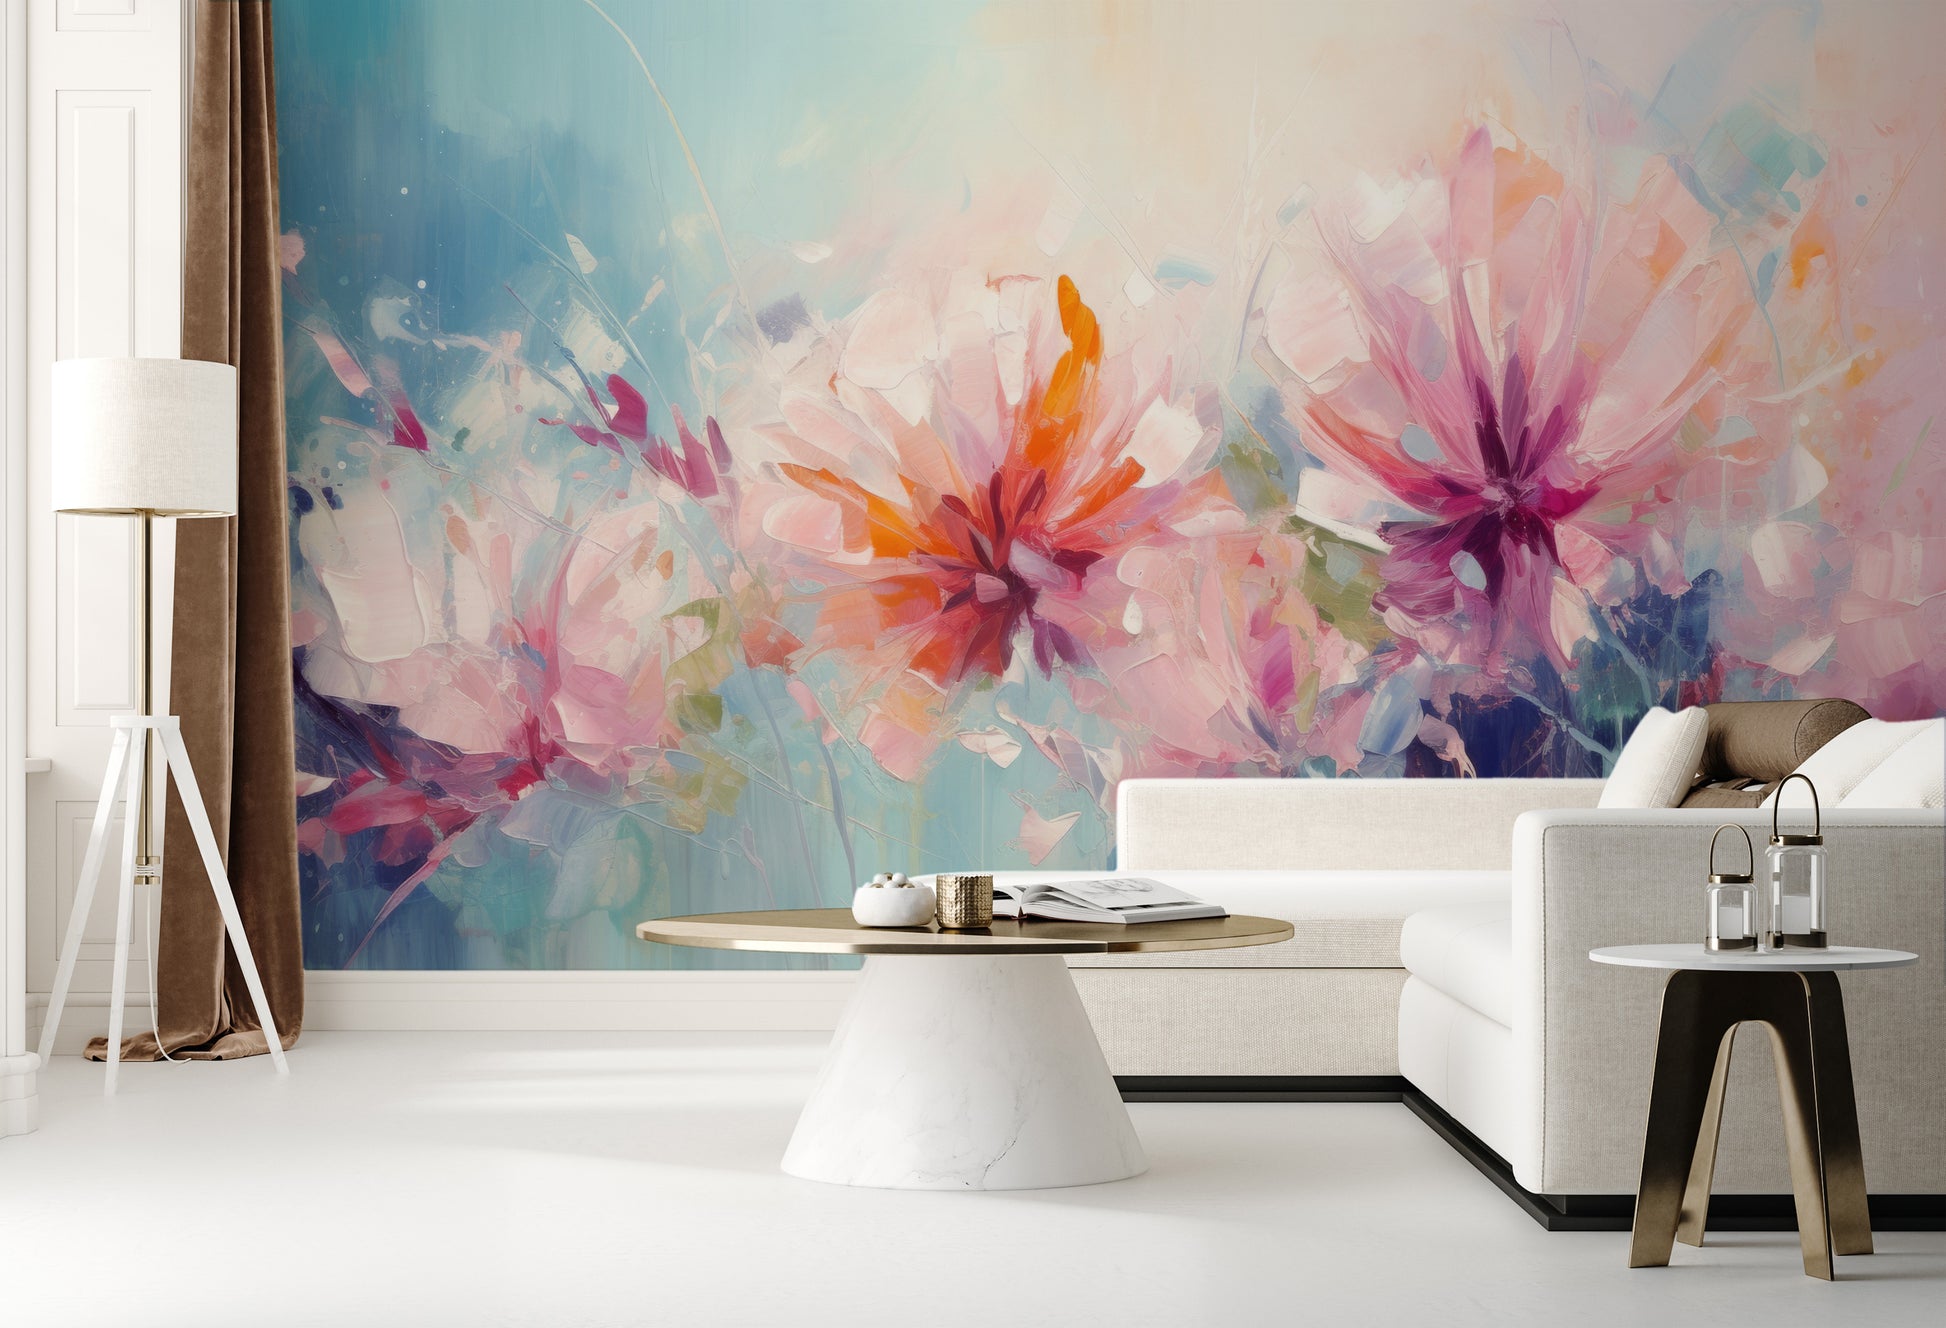 Wzór fototapety o nazwie Blushing Floral Delicacy pokazanej w kontekście pomieszczenia.